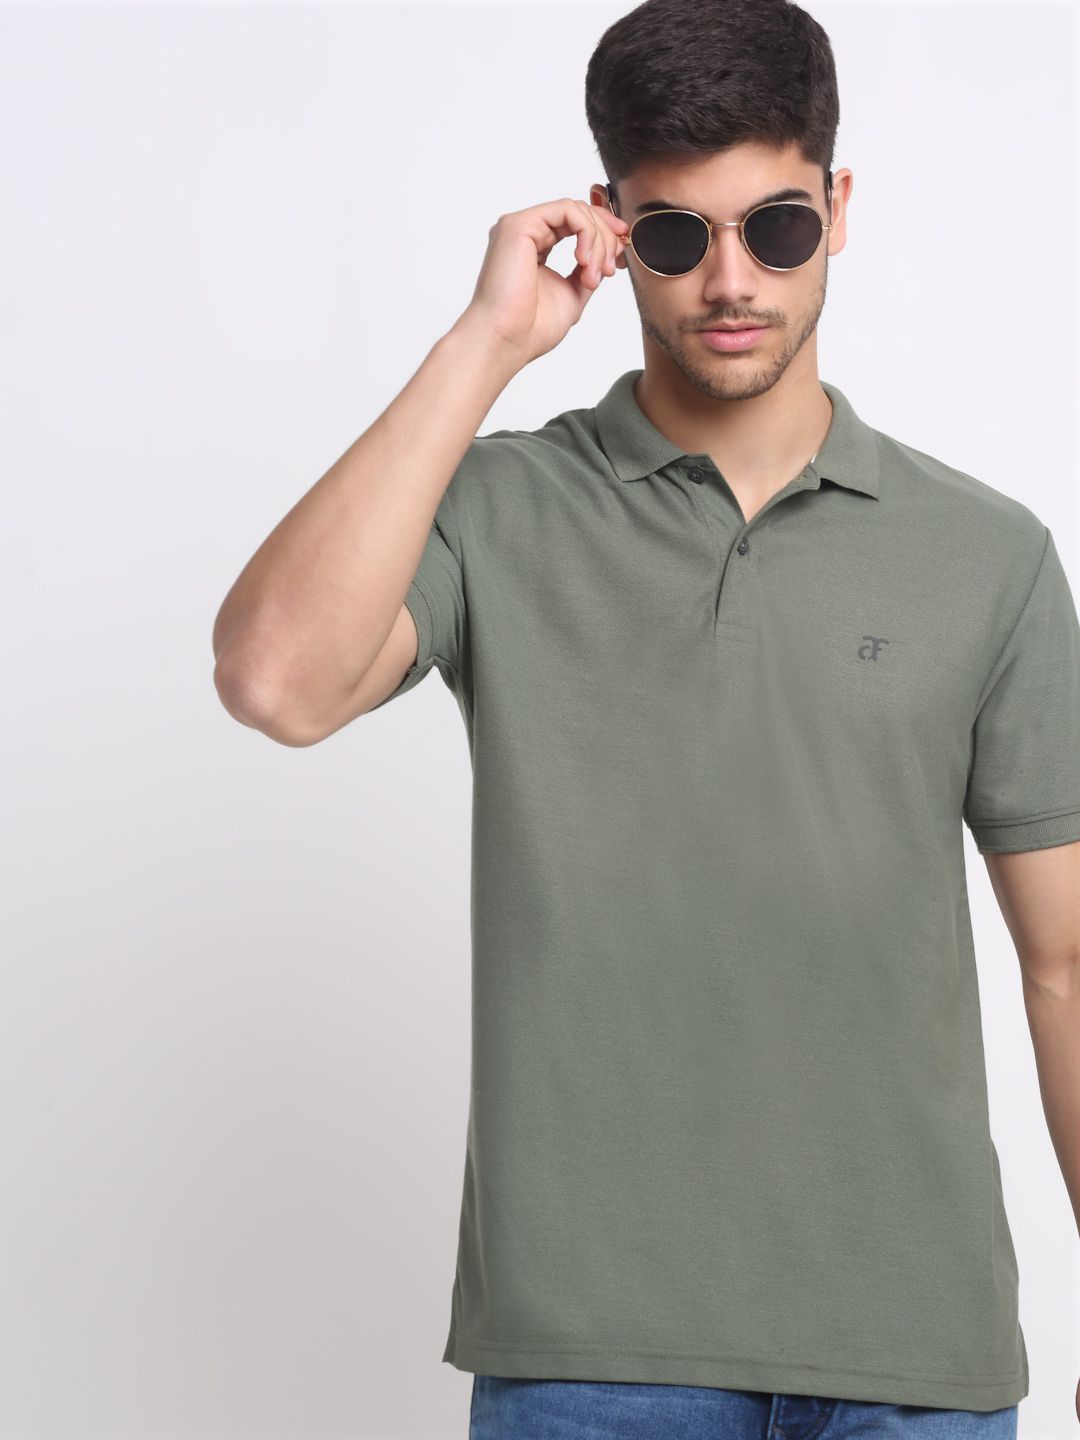     			Affordable AF - Olive Green Cotton Blend Regular Fit Men's Polo T Shirt ( Pack of 1 )